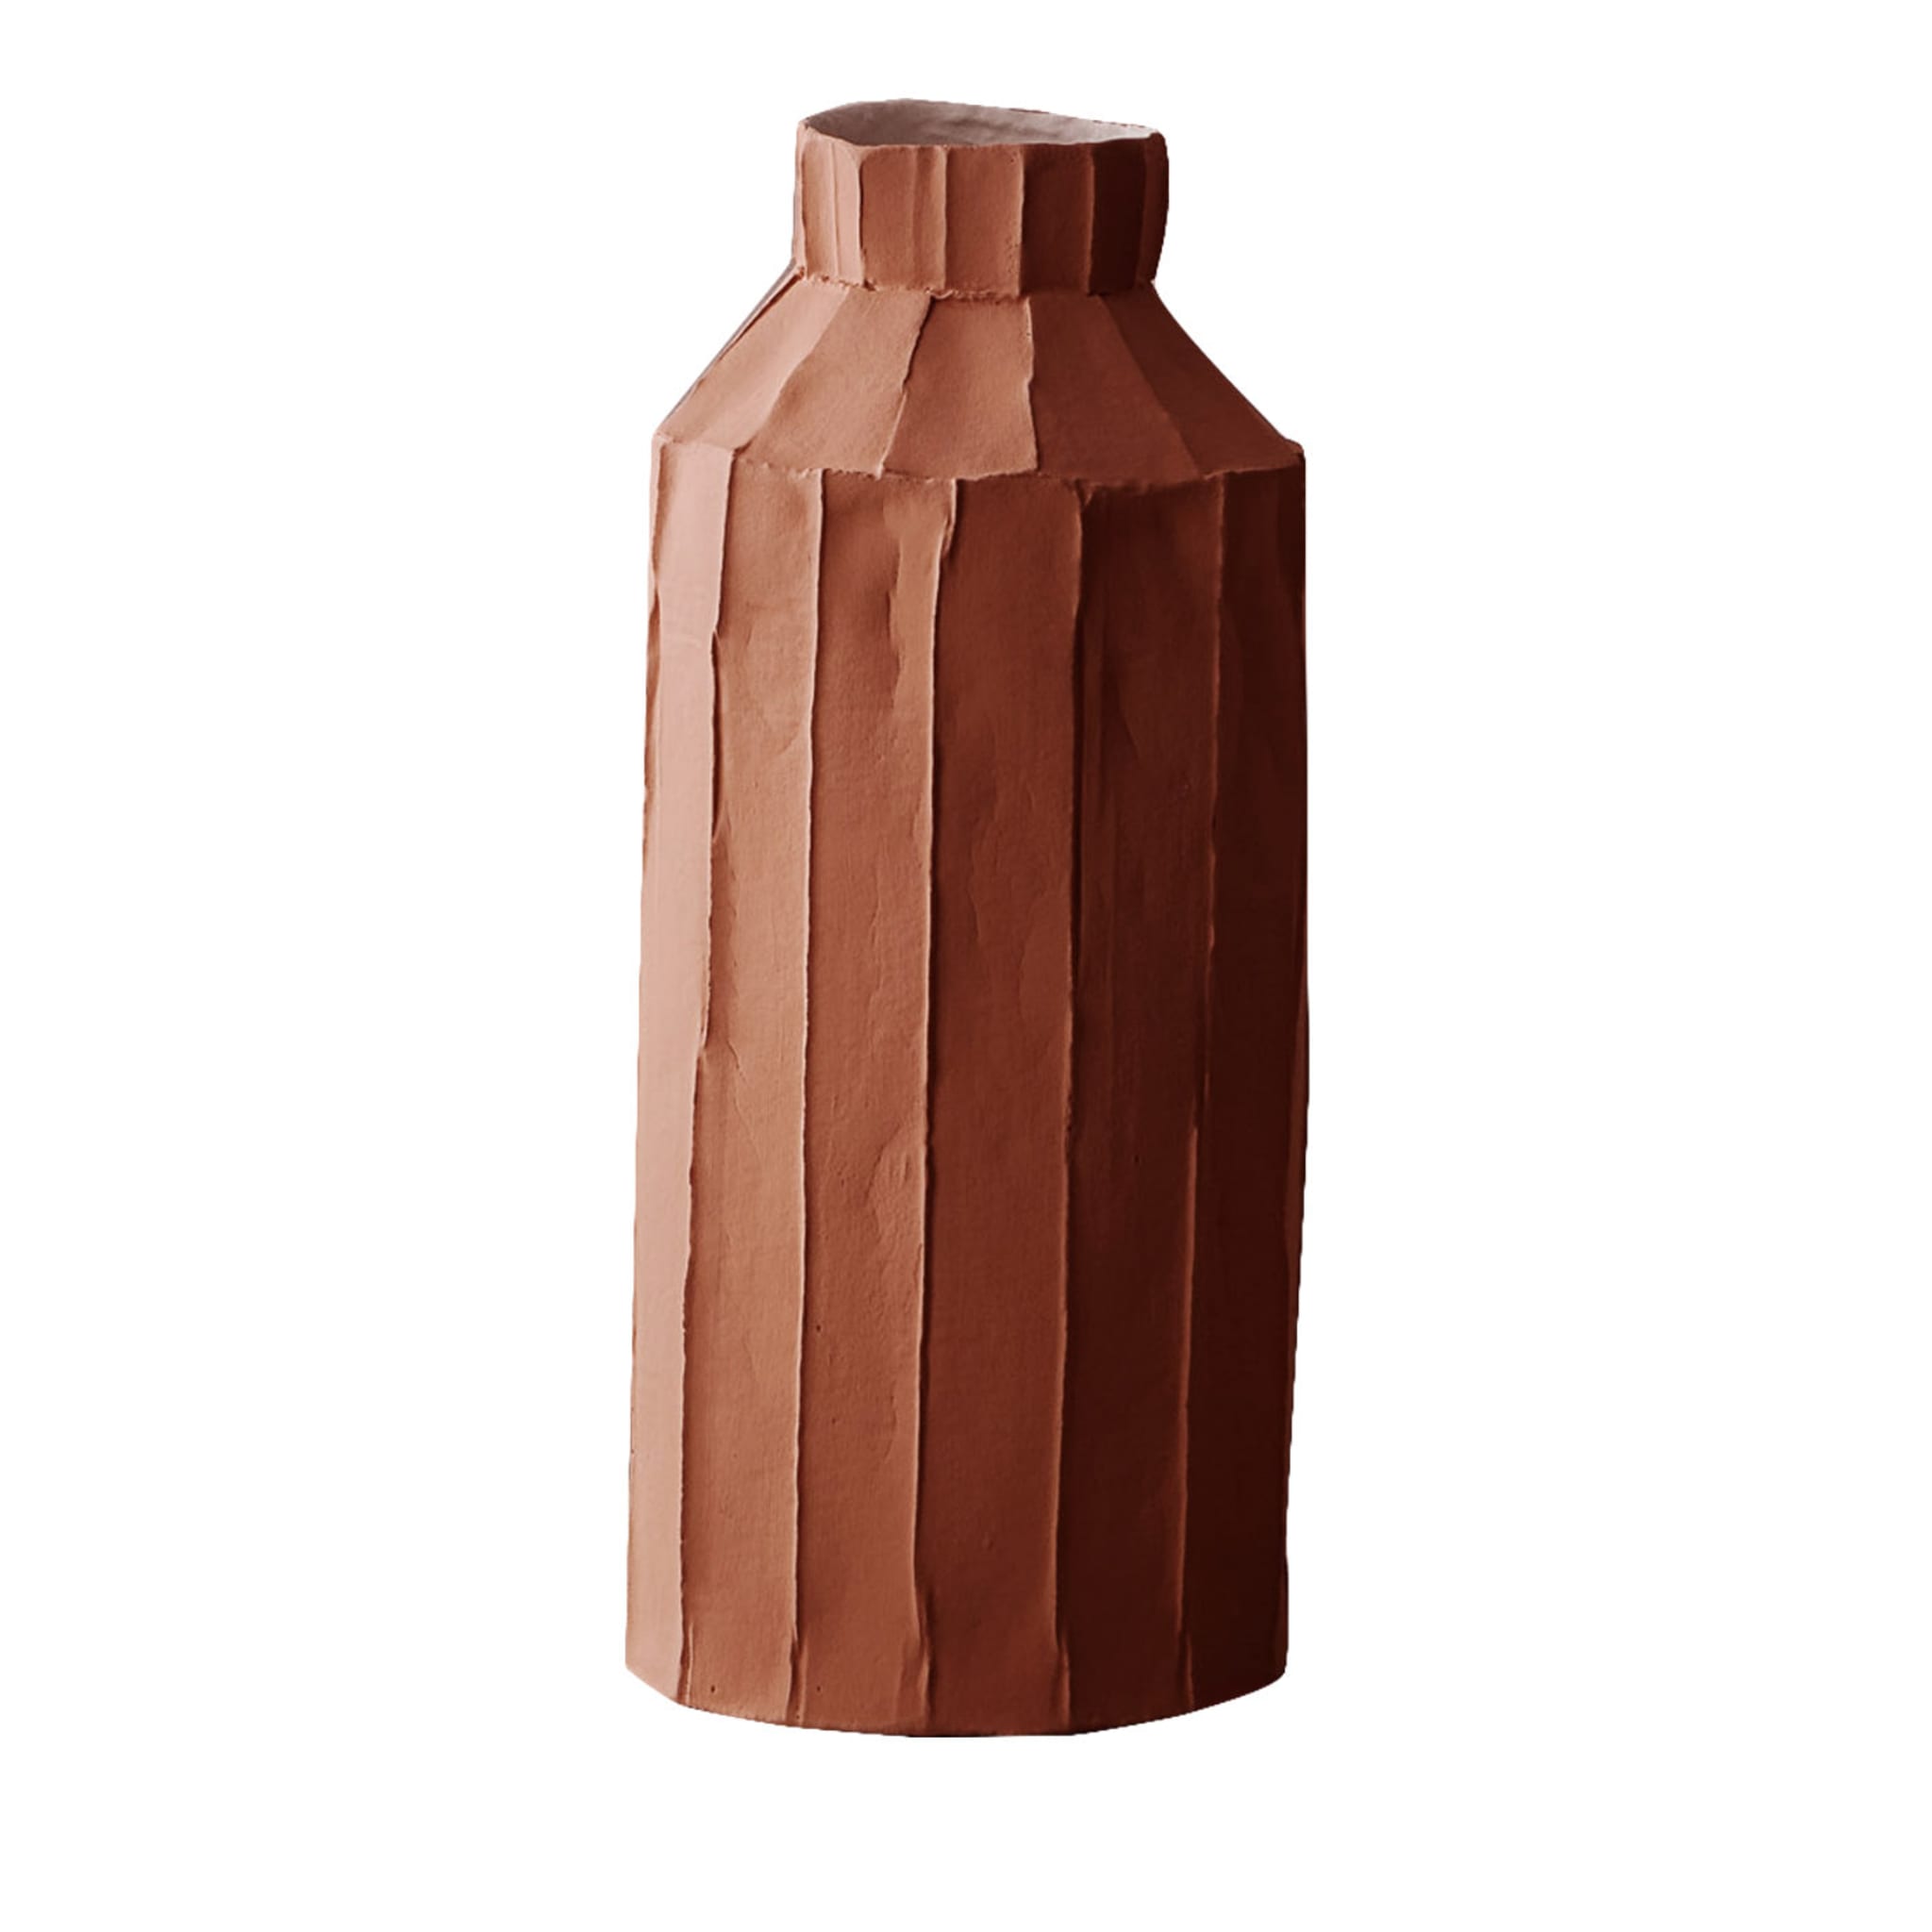 Cartocci Corteccia Fide Brown Vase - Main view